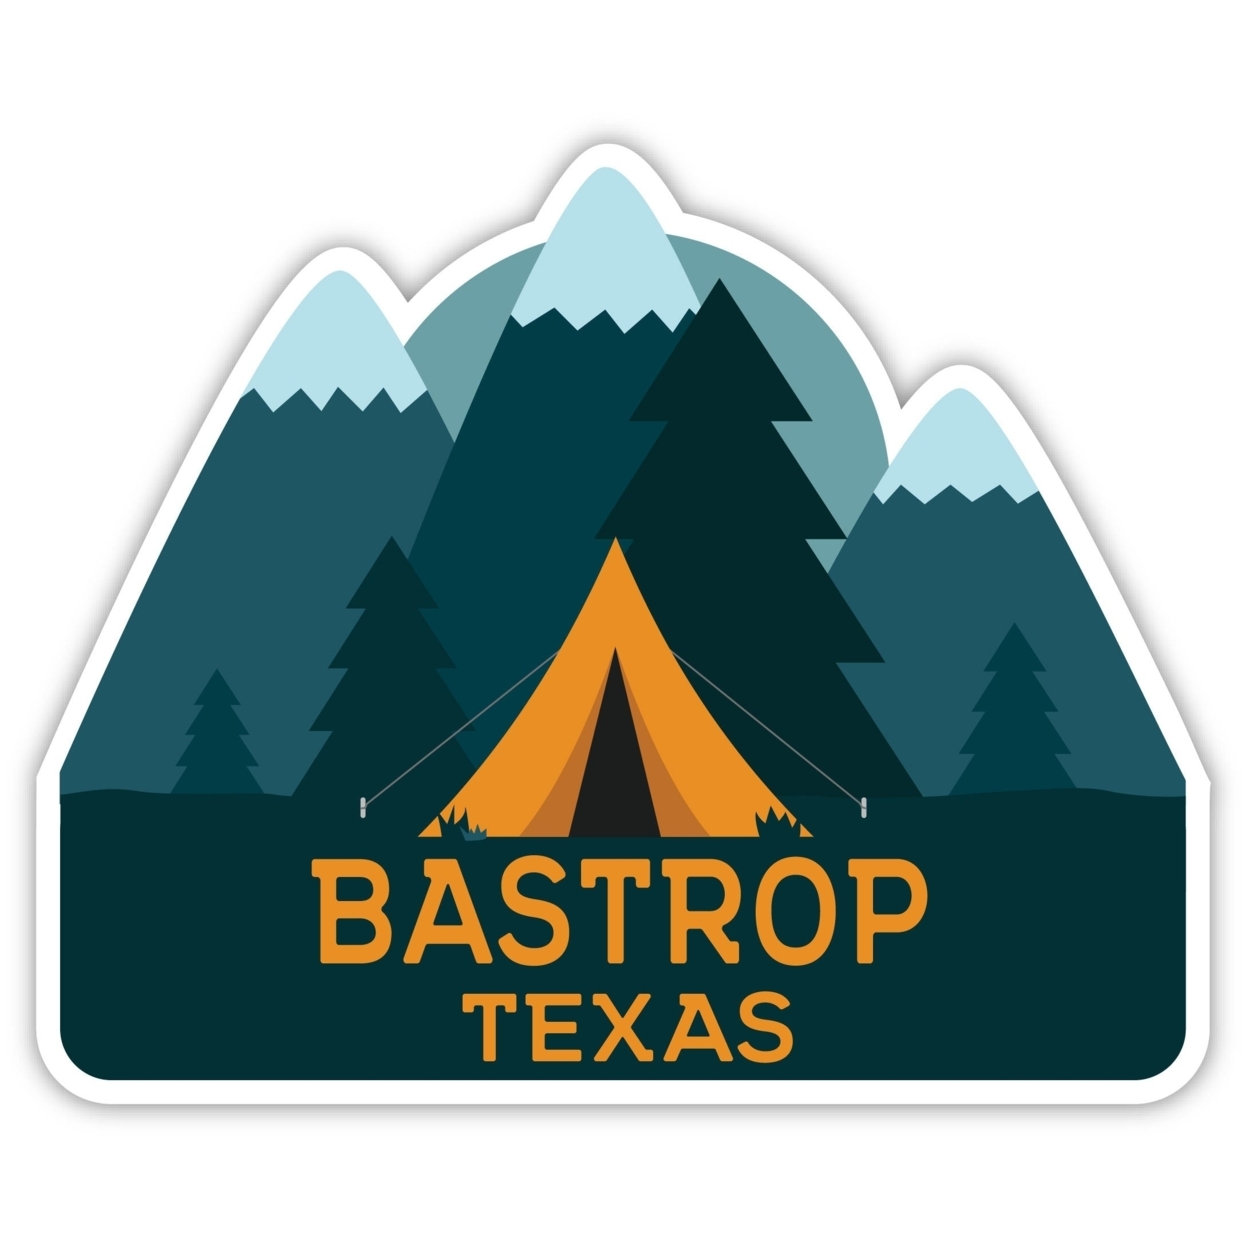 Bastrop Texas Souvenir Decorative Stickers (Choose Theme And Size) - Single Unit, 2-Inch, Tent